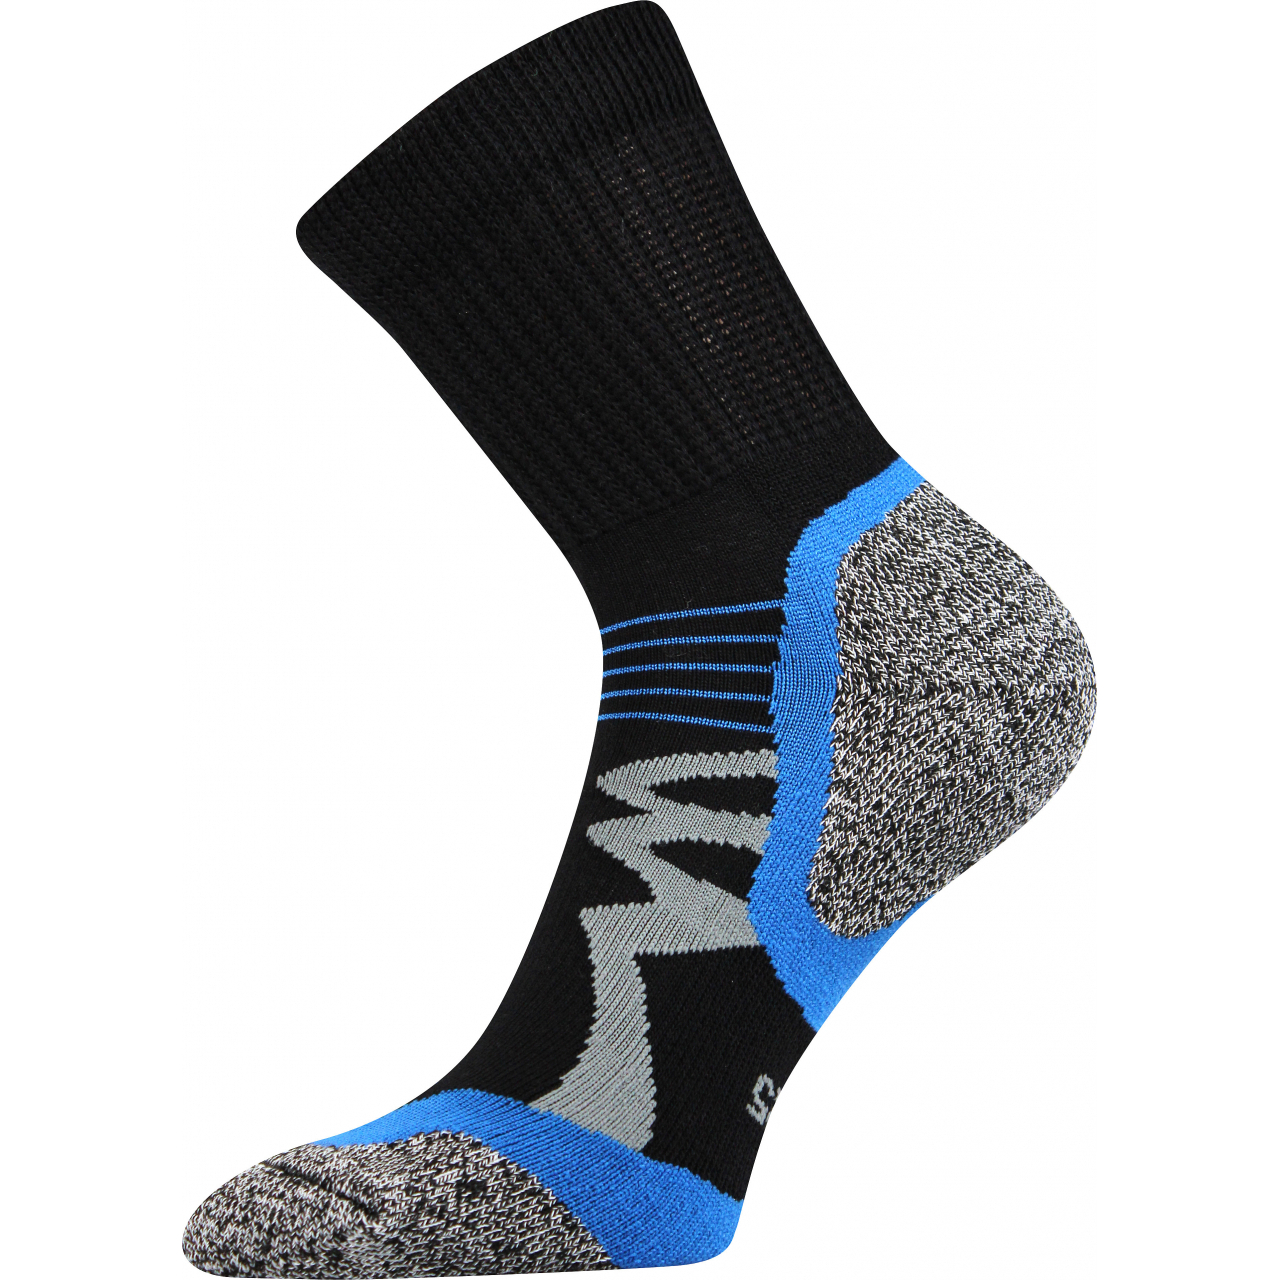 Ponožky funkční unisex Voxx Simplex - černé-modré, 43-46